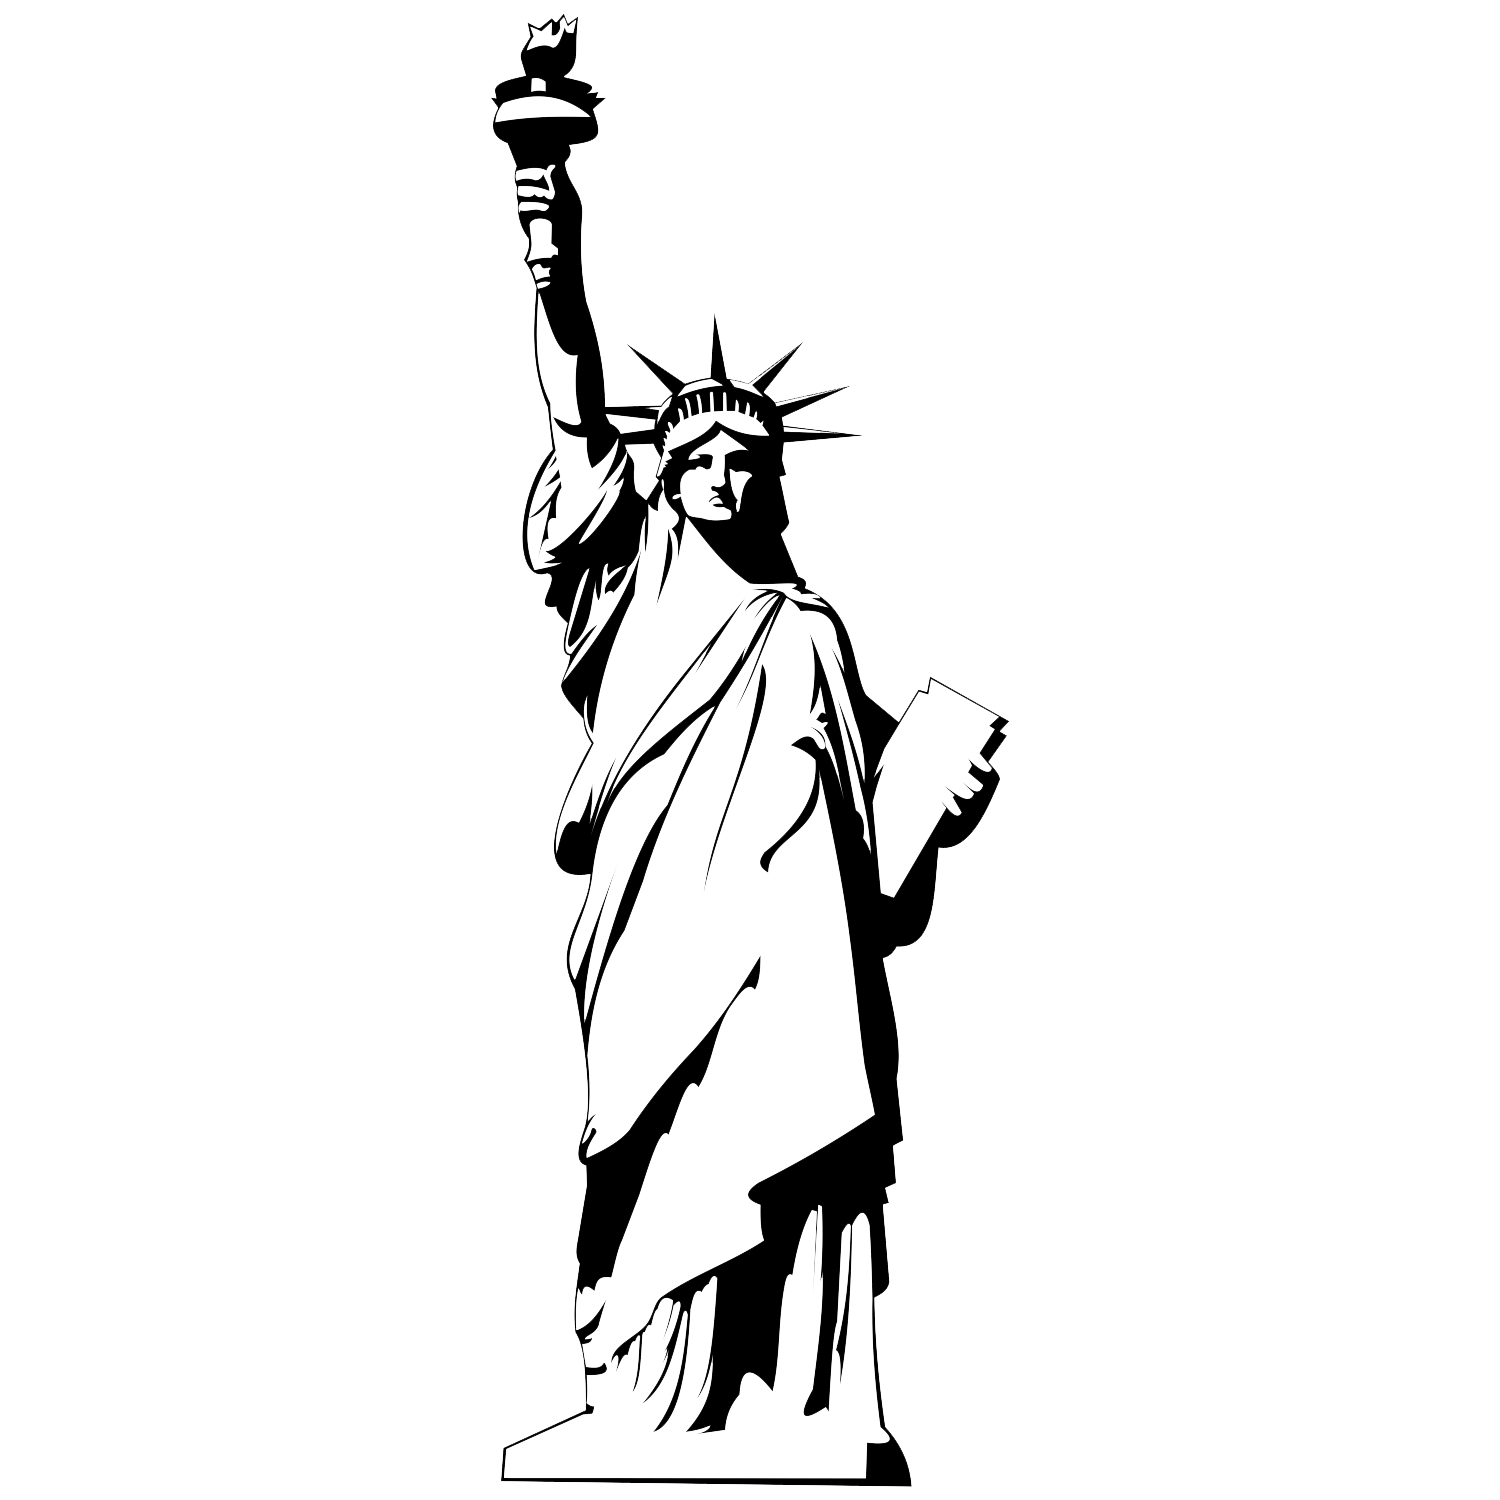 Immagine di PNG della statua della libertà